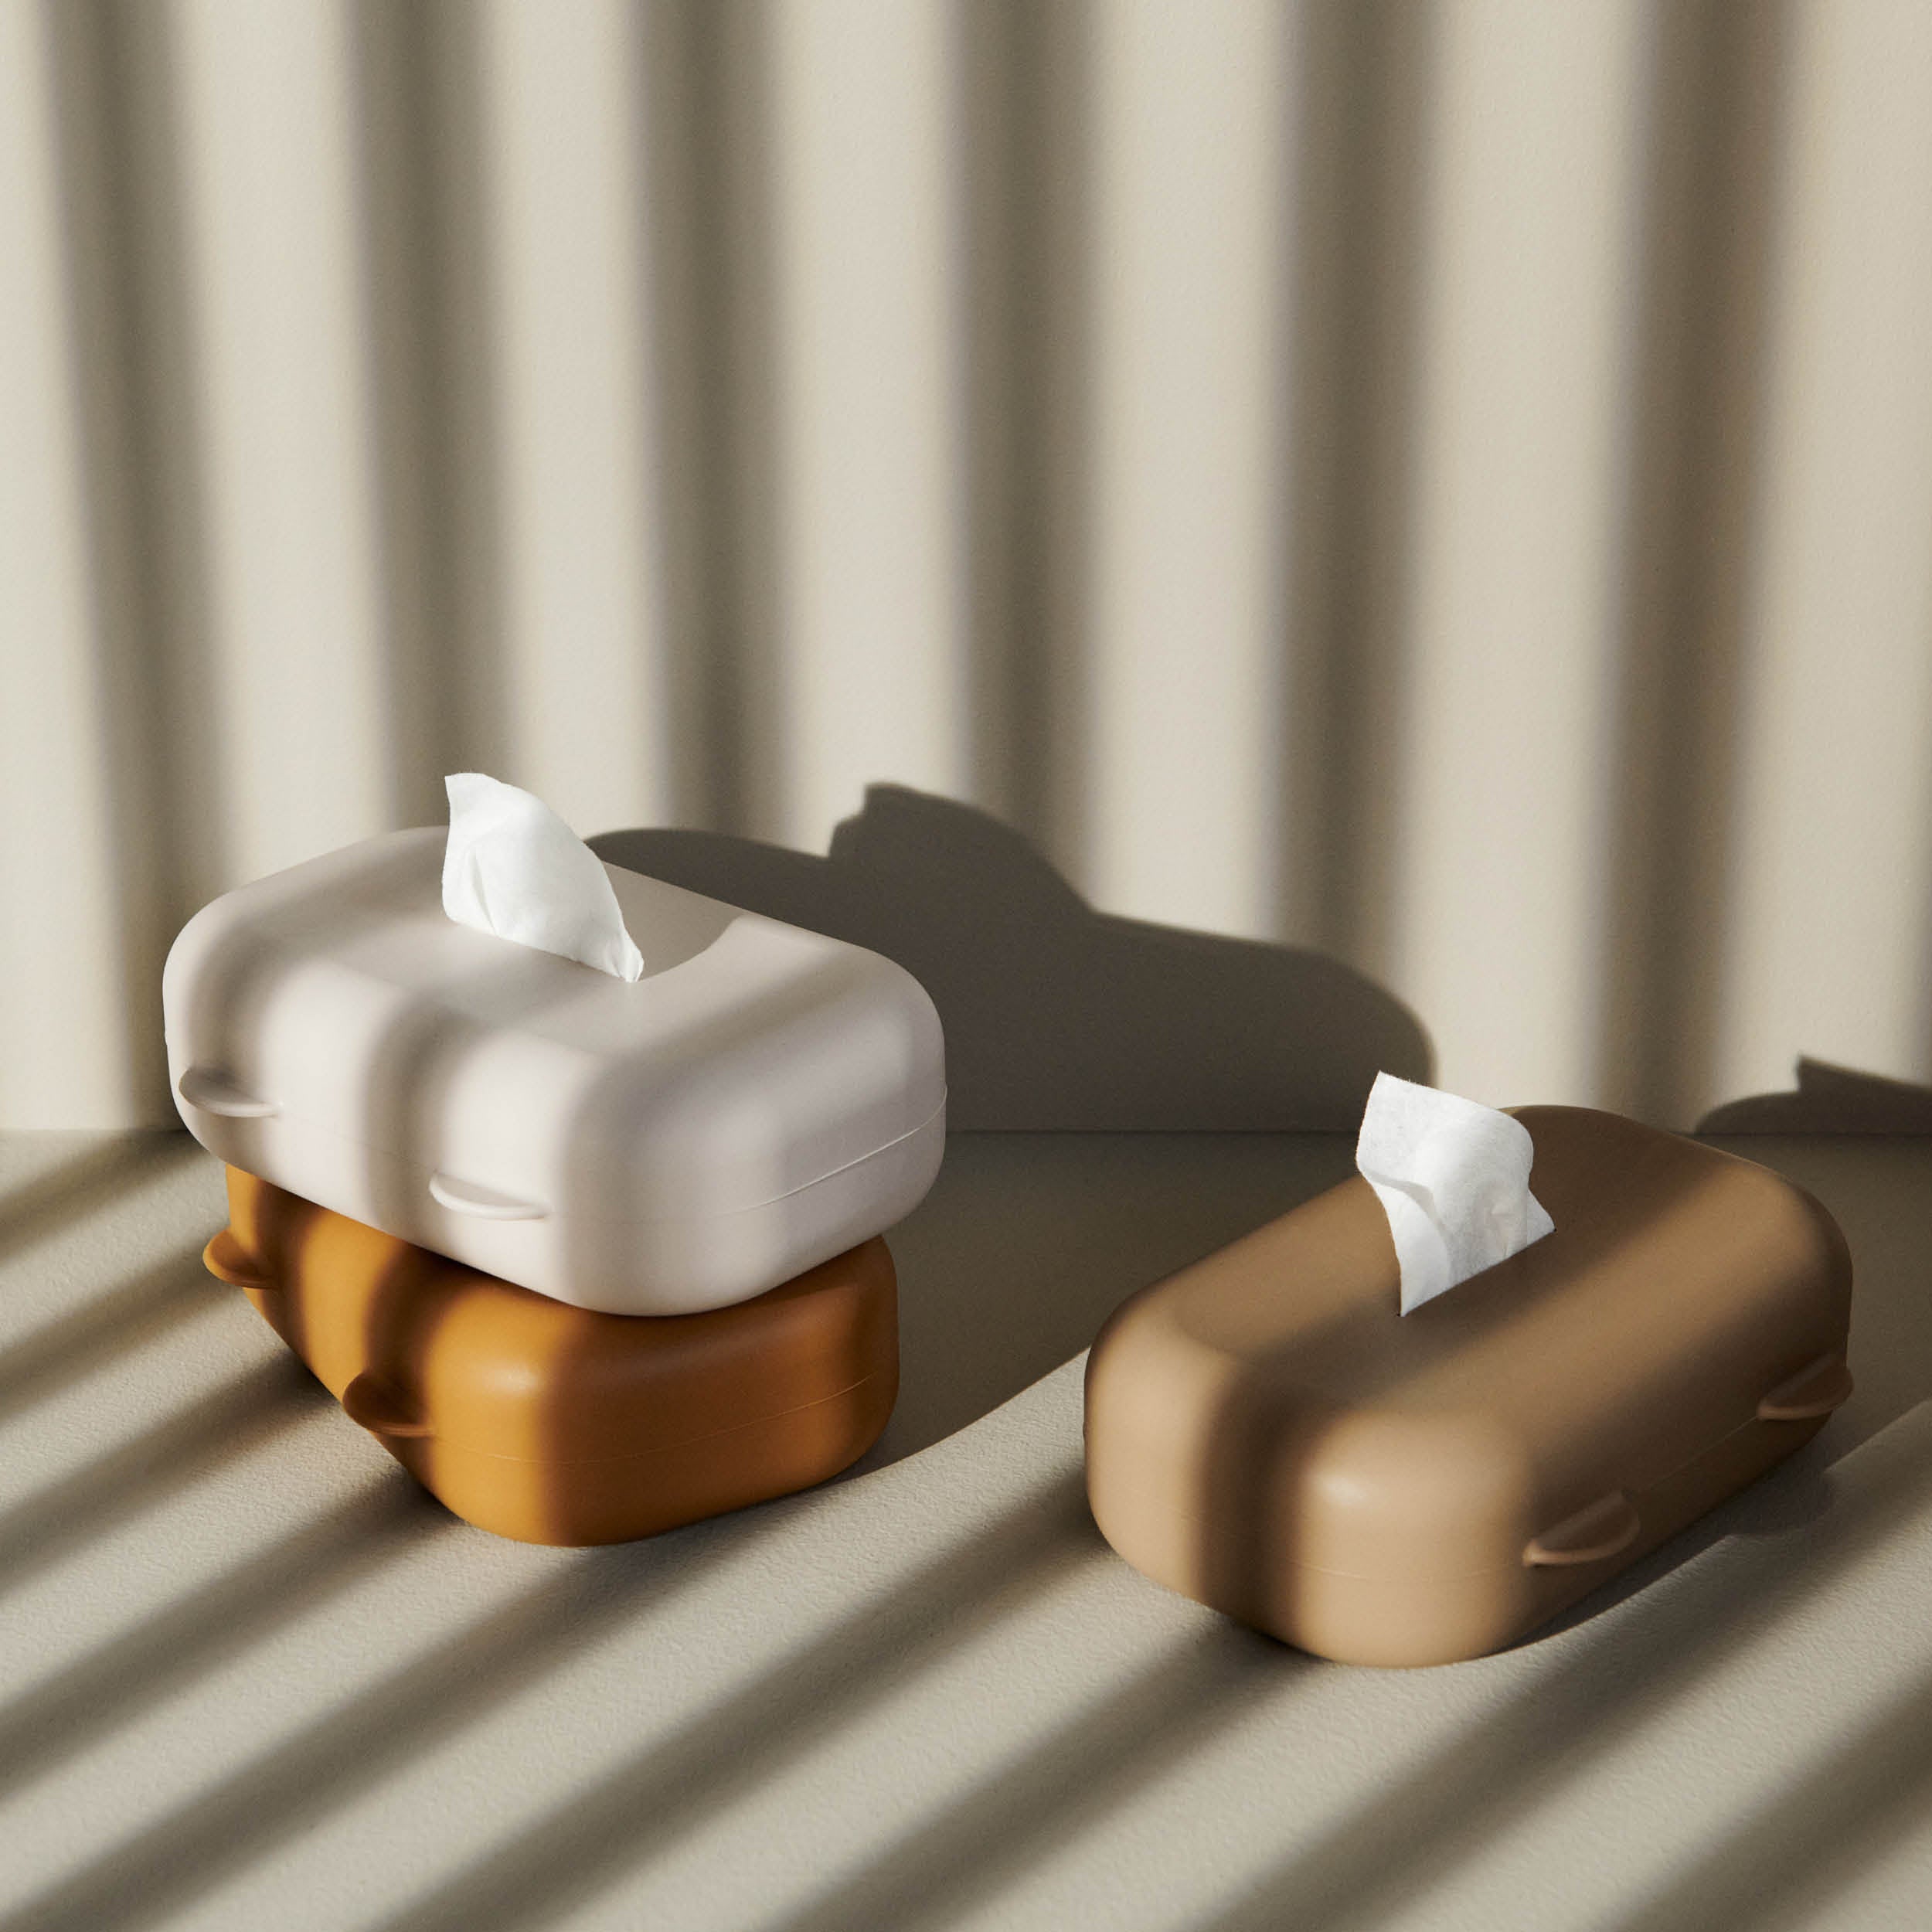 Wickeltisch - Babyzimmer - Feuchttuchbehälter - Behälter für Feuchttücher aus Silikon Emi in golden caramel von Liewood bei kinder und konsorten Babygeschäft